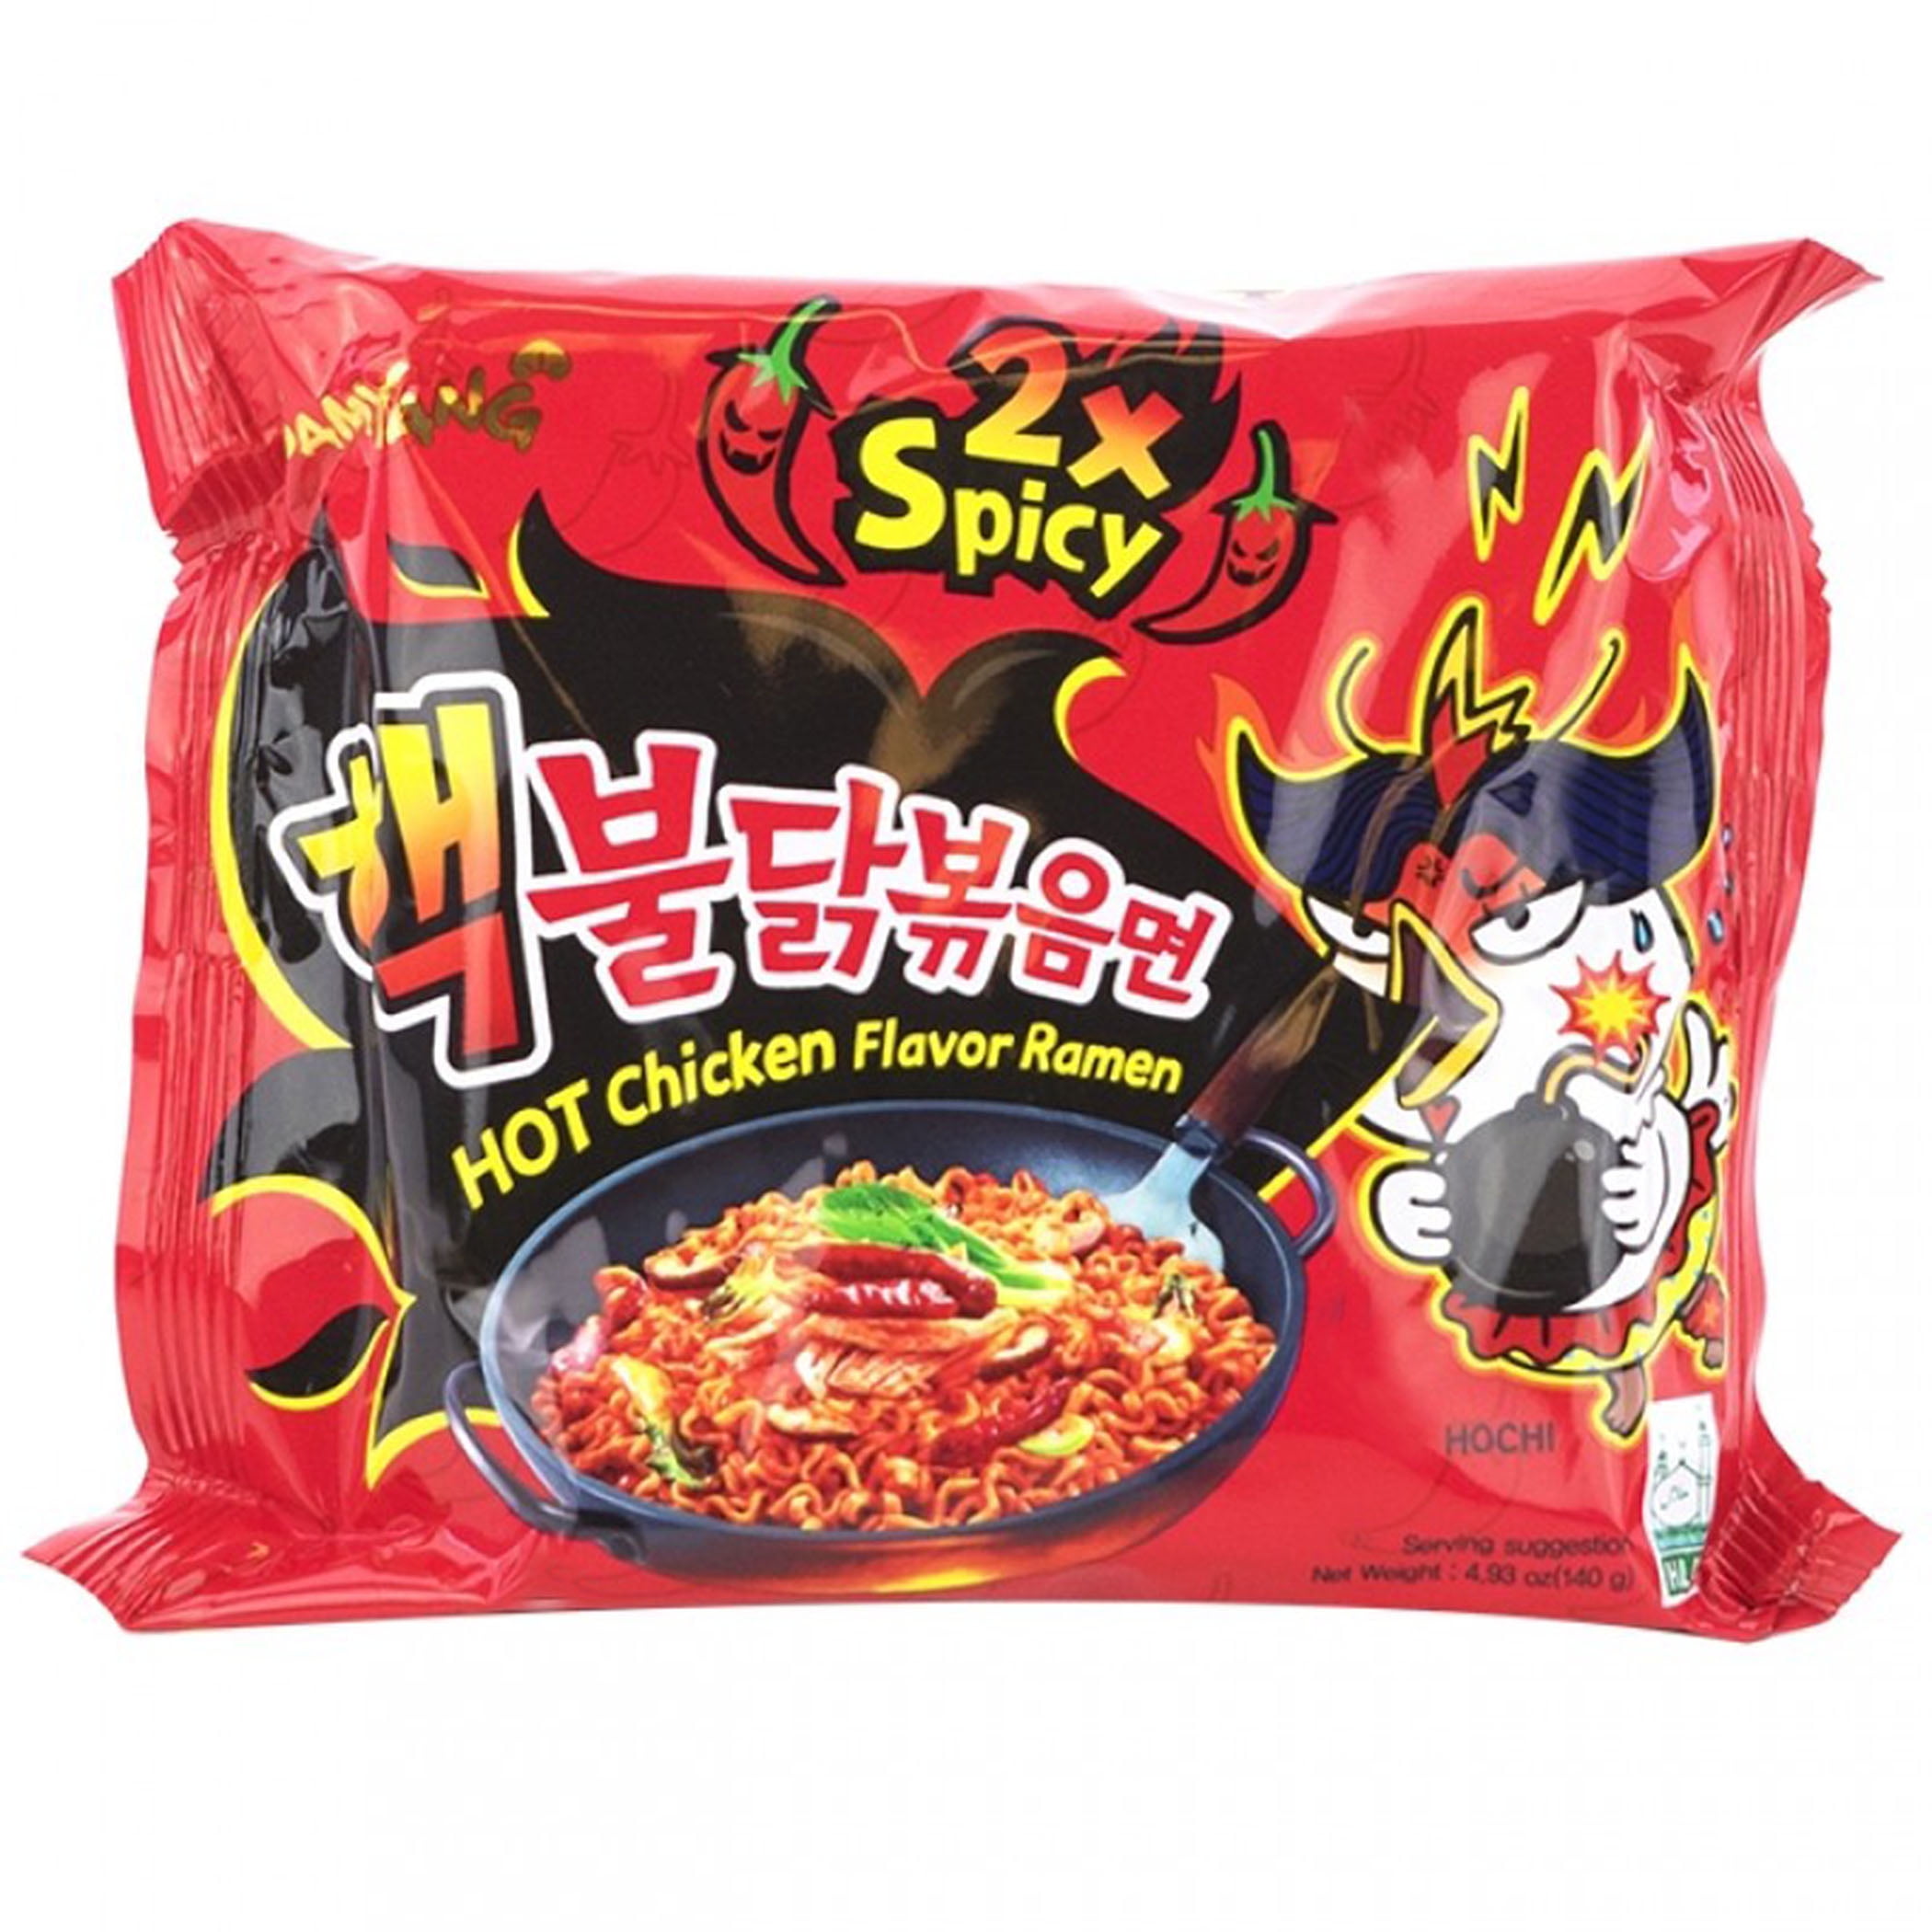 Samyang Spicy Hot Chicken Ramen Stir Fried Noodles 2 X Spicy 4 93 Oz  